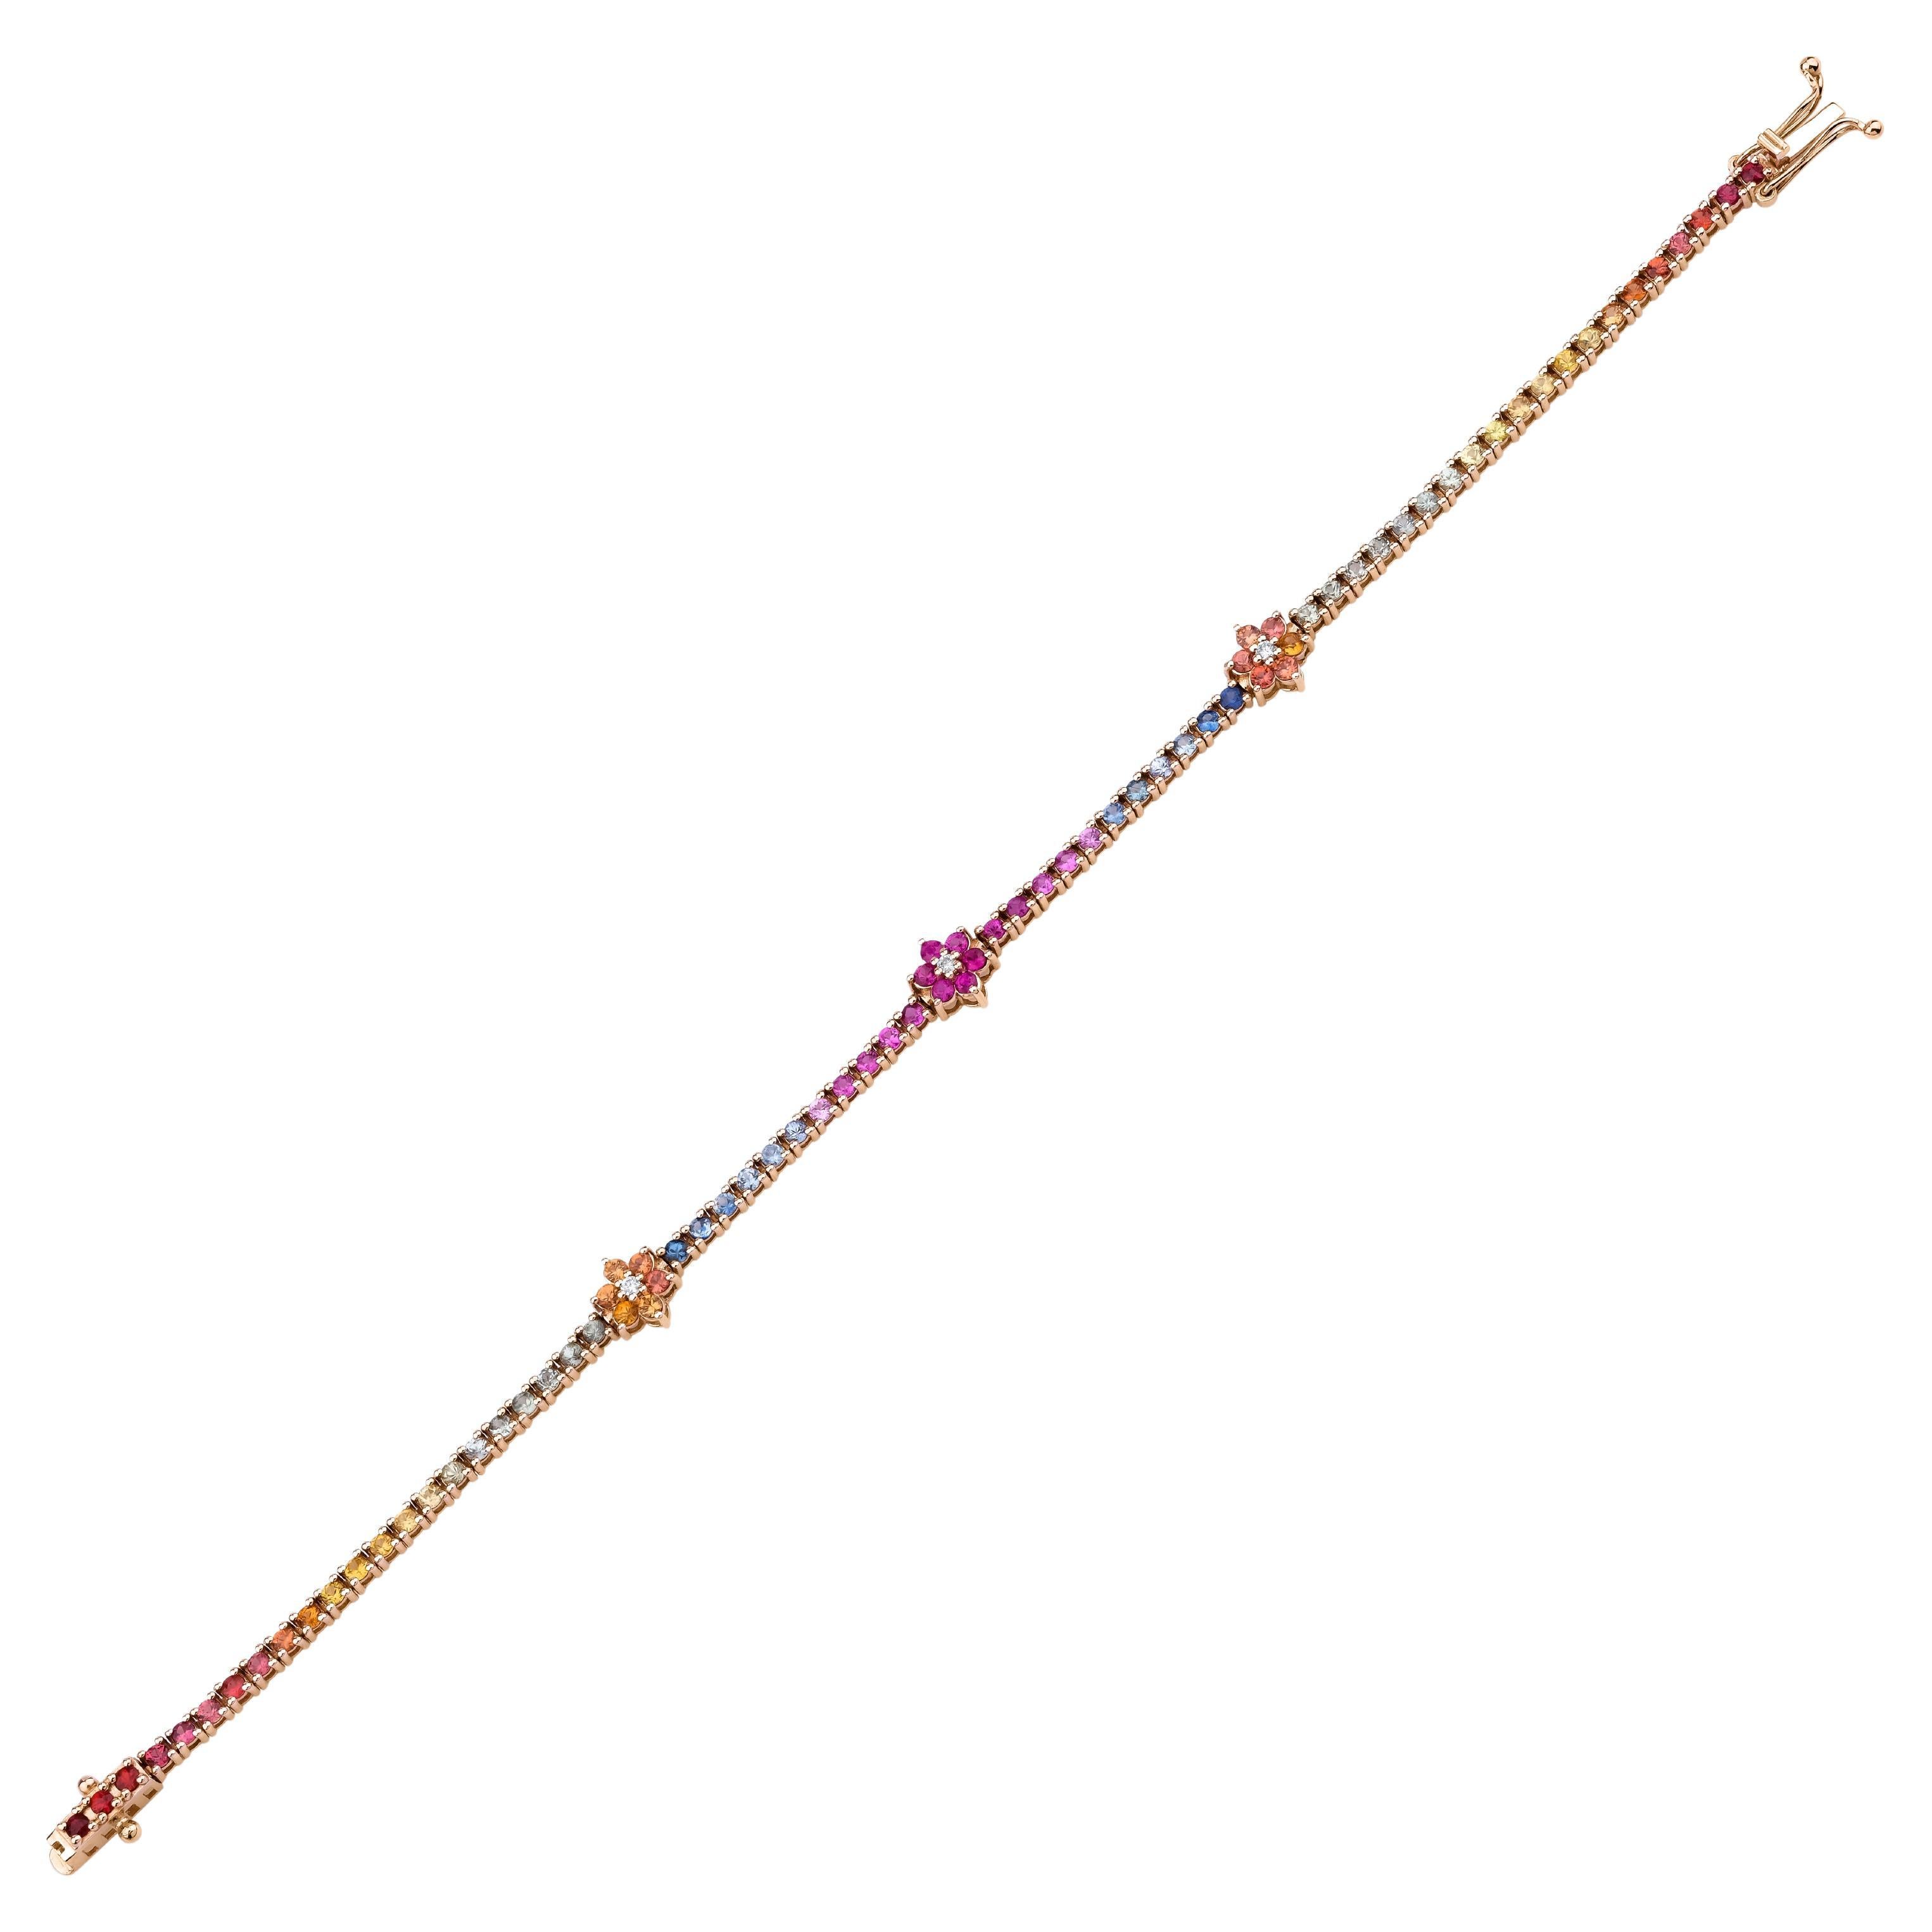 Rainbow Sapphire Floral Design Tennis Bracelet For Sale